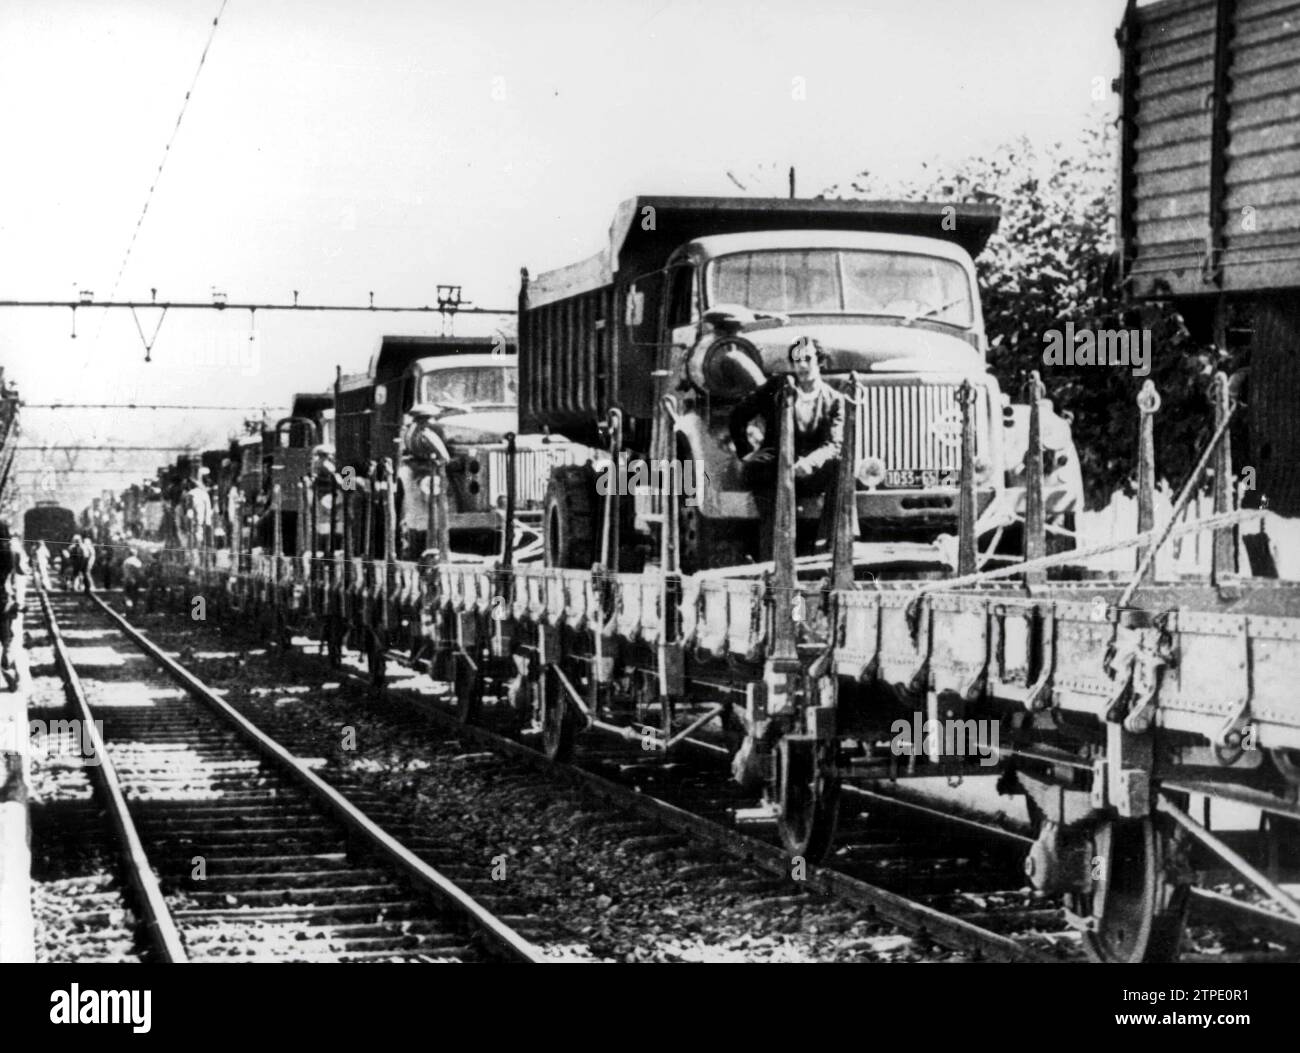 22/10/1975. Camion sulle piattaforme ferroviarie per portare il cibo alla marcia verde. Crediti: Album / Archivo ABC Foto Stock